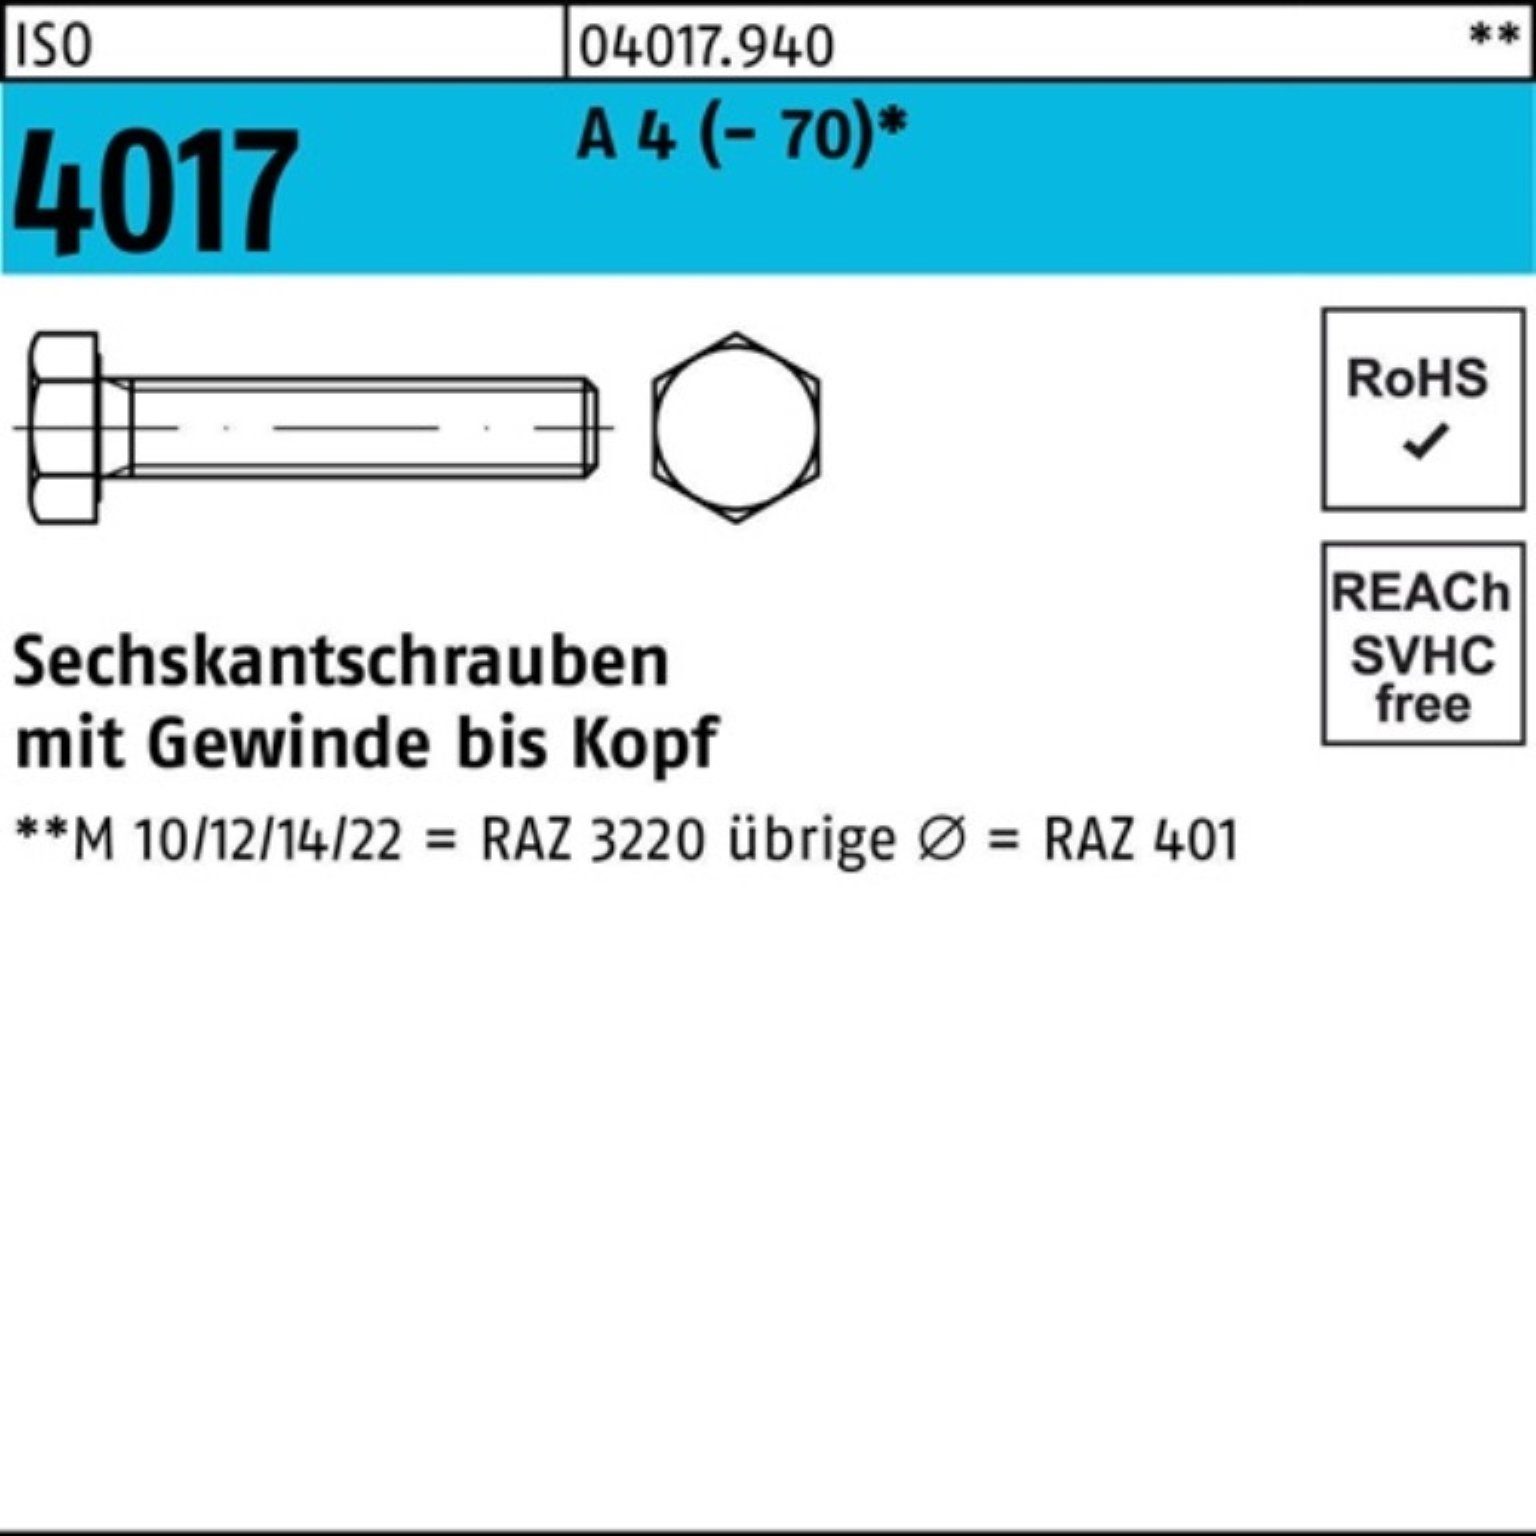 Bufab Sechskantschraube 100er Pack Sechskantschraube ISO 4017 VG M27x 110 A 4 (70) 1 Stück